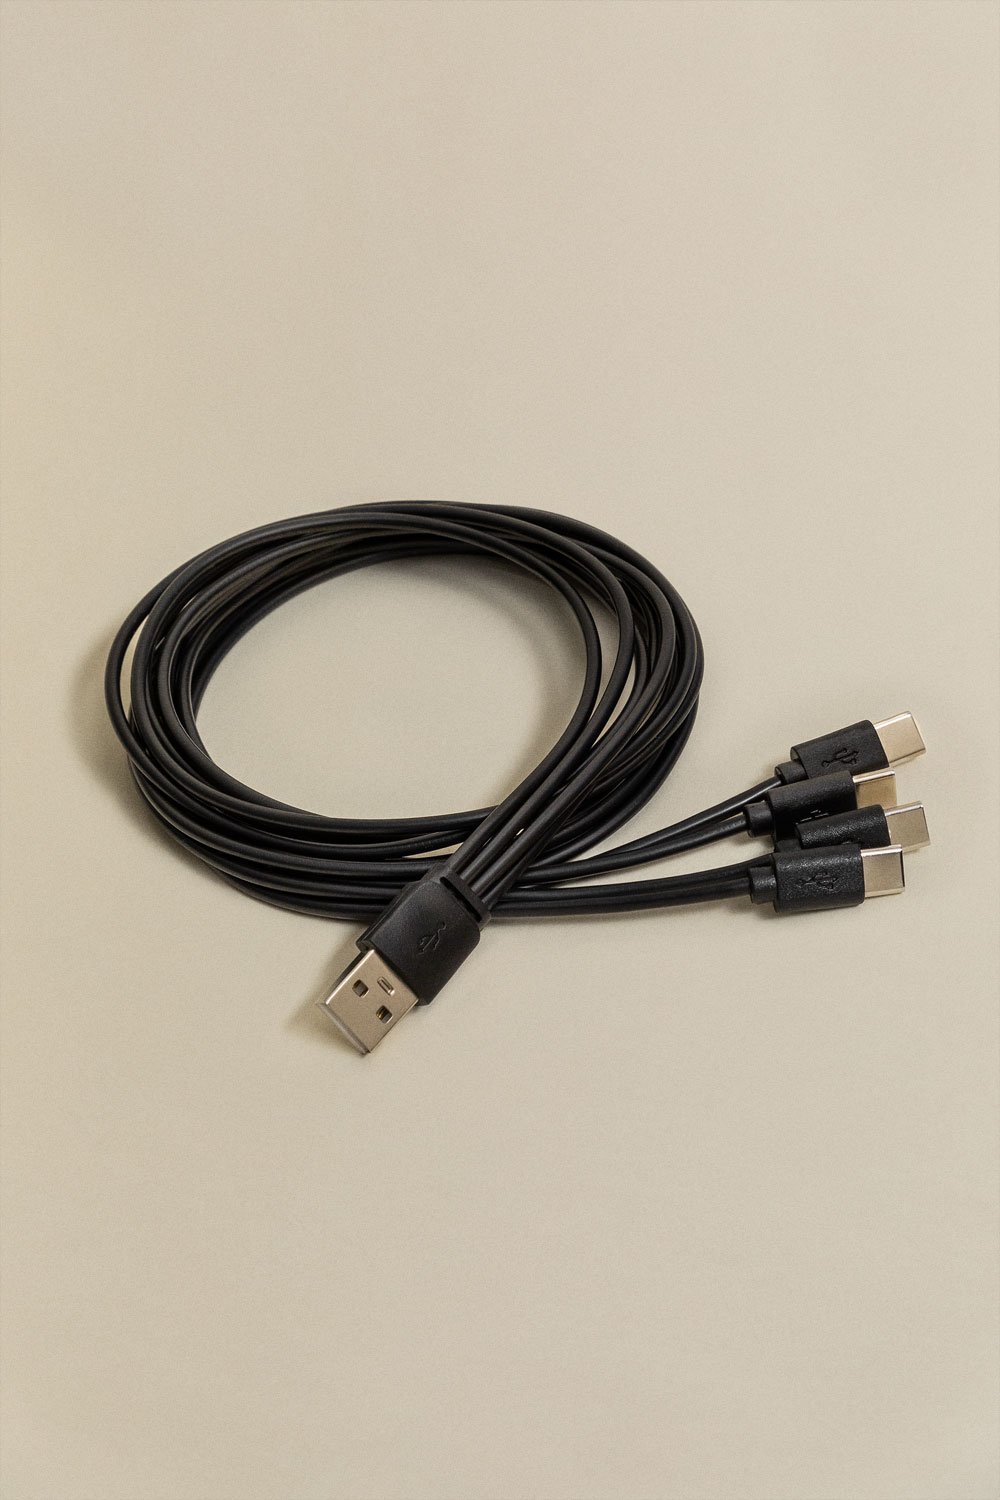 Câble USB Multi Carga 4 en 1 Type C 1m Nurbek , image de la galerie 1